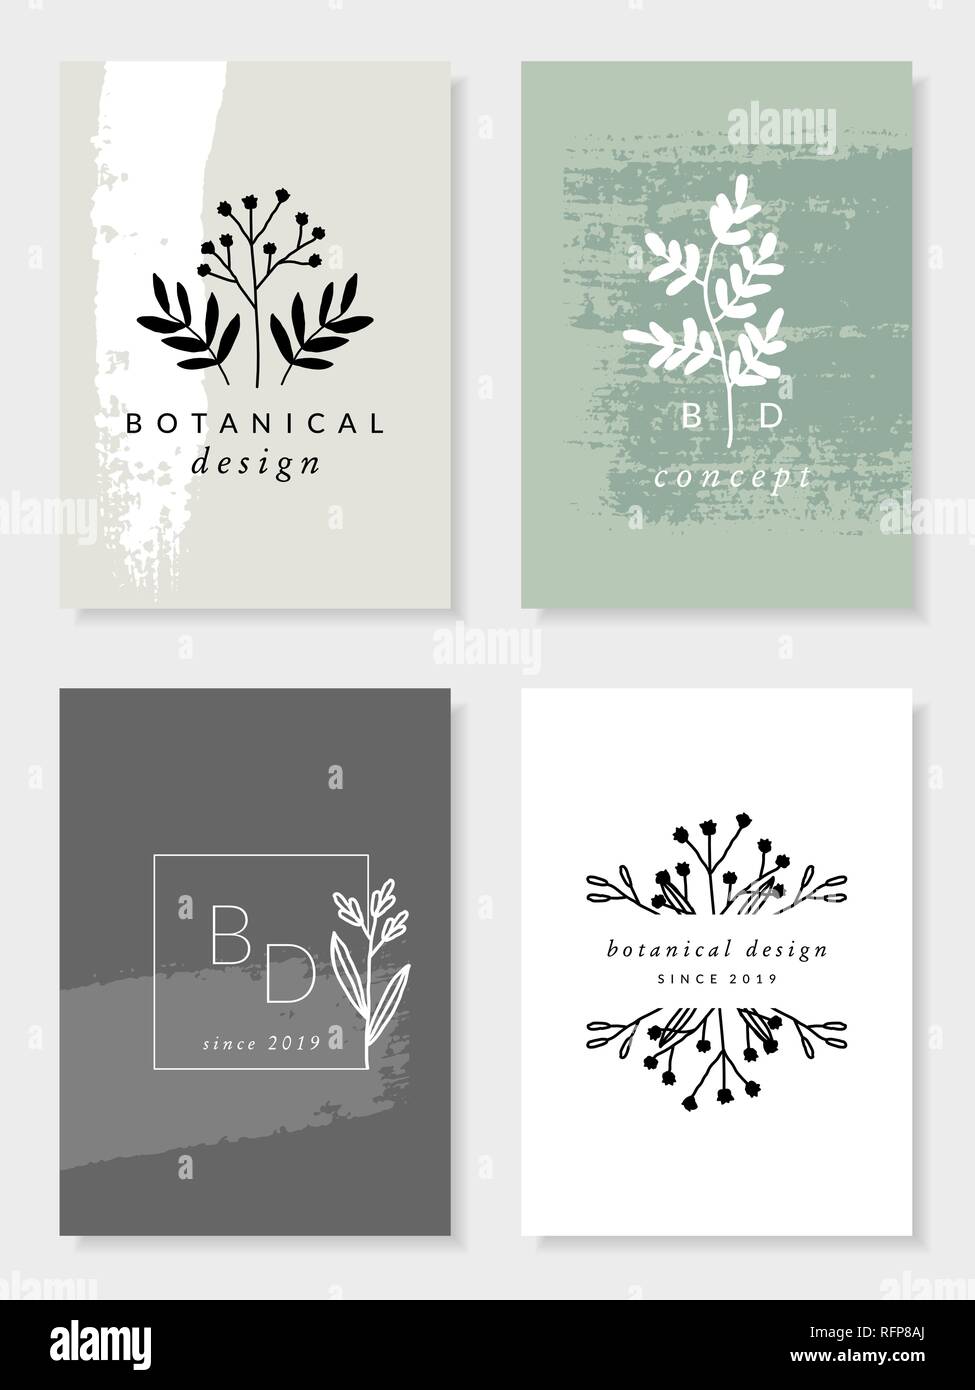 Un conjunto de cuatro botánicos modernos y elegantes diseños en color verde pastel, gris y blanco. Carácter minimalista inspirados ilustración vectorial. Perfeccionar Imagen Vector de stock - Alamy